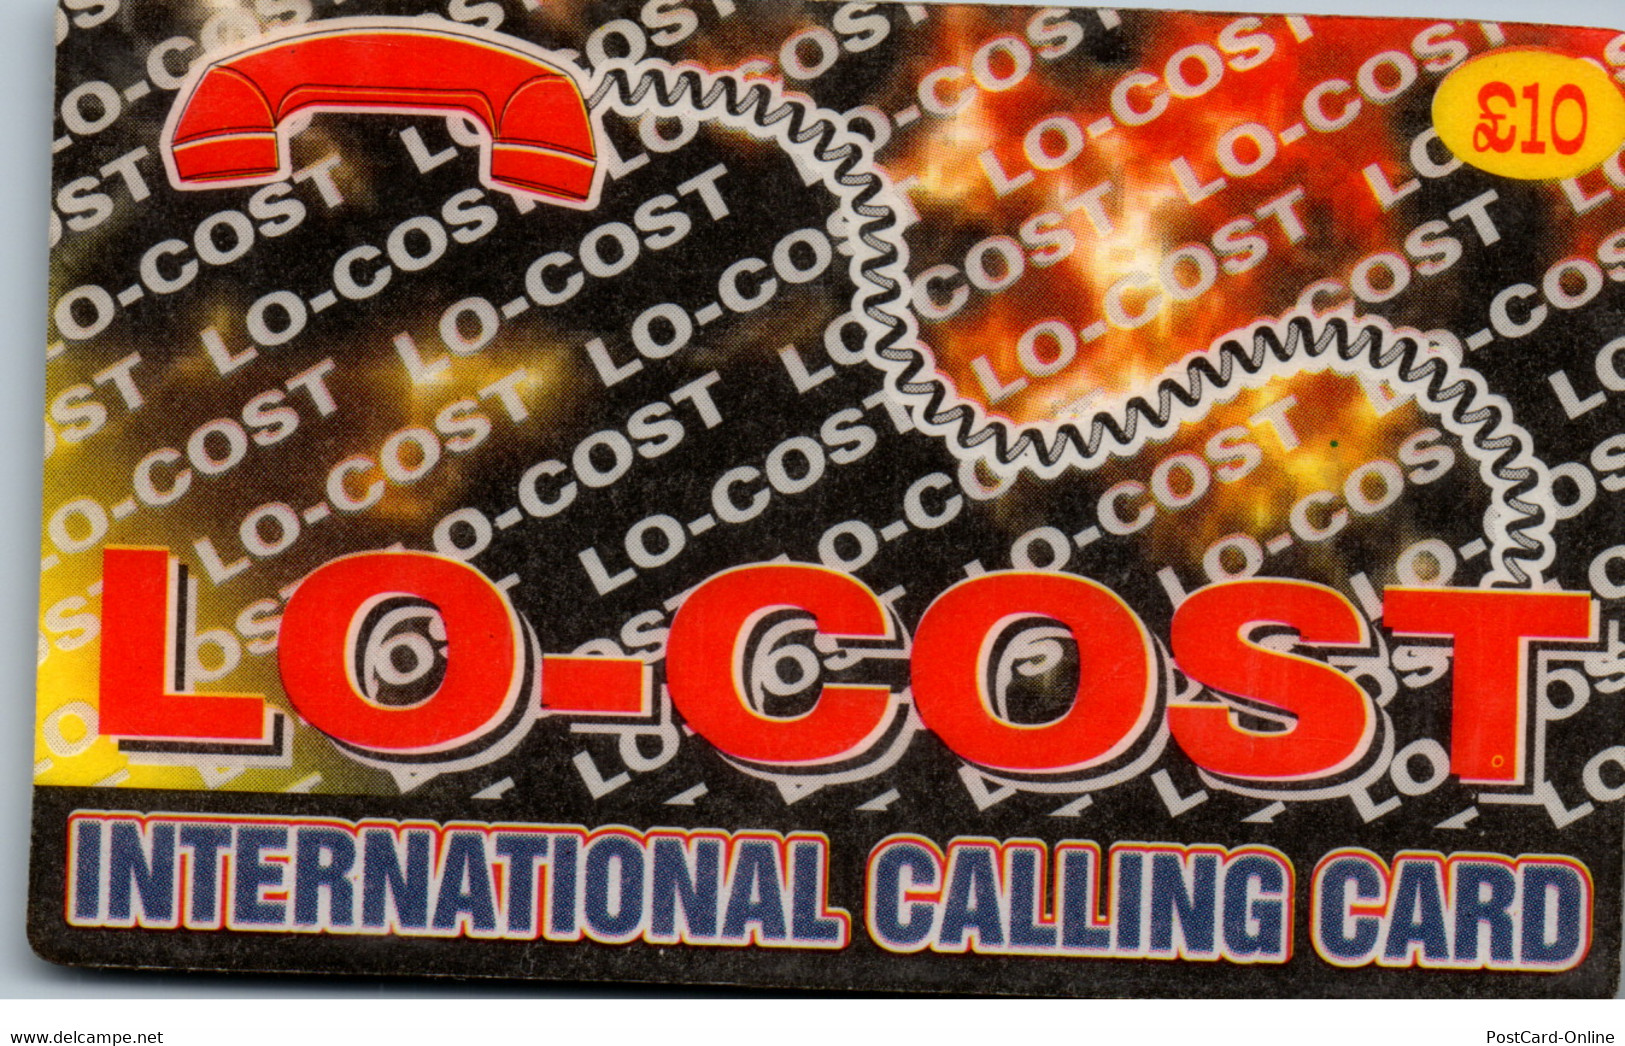 20287 - Großbritannien - Lo Cost Calling Card , Prepaid - BT Global Cards (Prepaid)